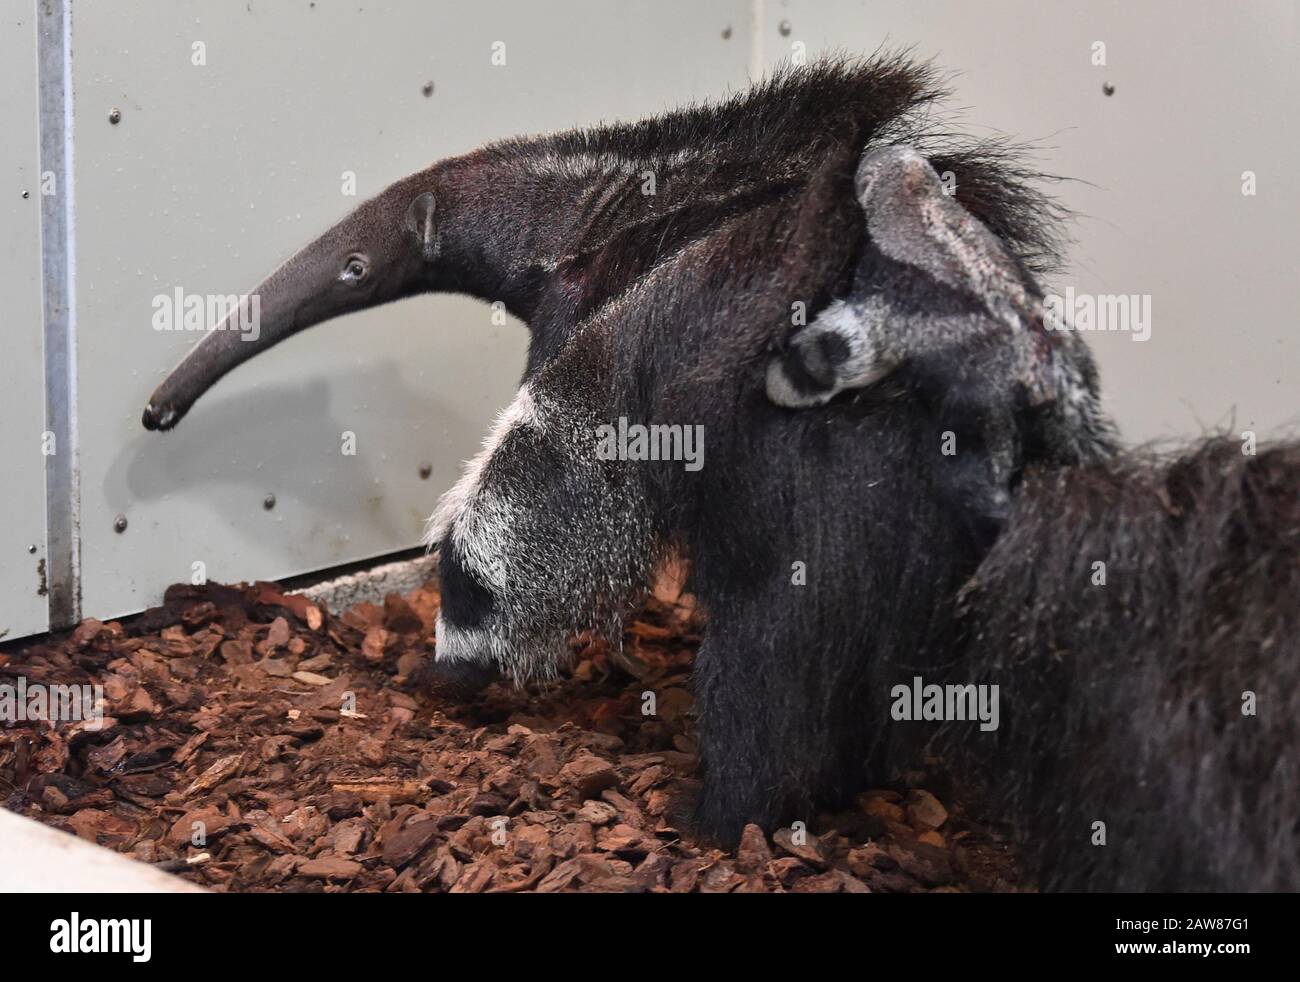 Zlin, Repubblica Ceca. 07th Feb, 2020. Una gigantesca scrofa di anteater (Myrmechophaga tridactyla) con un cucciolo maschio sul suo dorso è visibile nello Zoo di Zlin, Repubblica Ceca, il 7 febbraio 2020. Credito: Dalibor Gluck/Ctk Foto/Alamy Live News Foto Stock